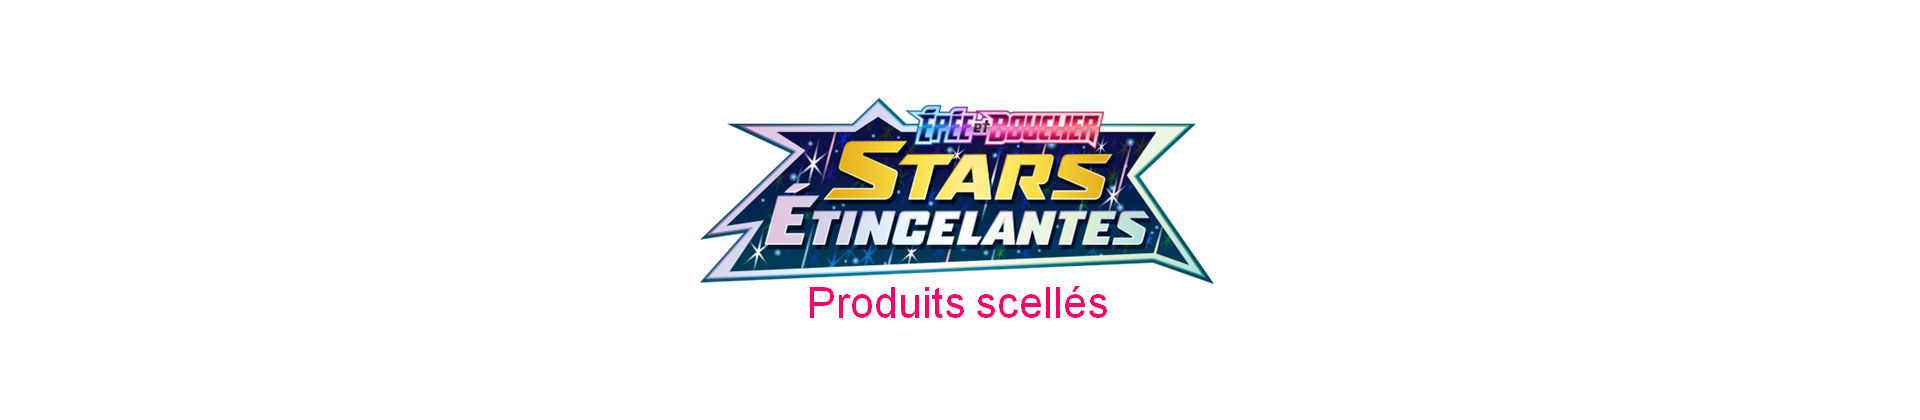 Produits scellés Stars Etincelantes EB09